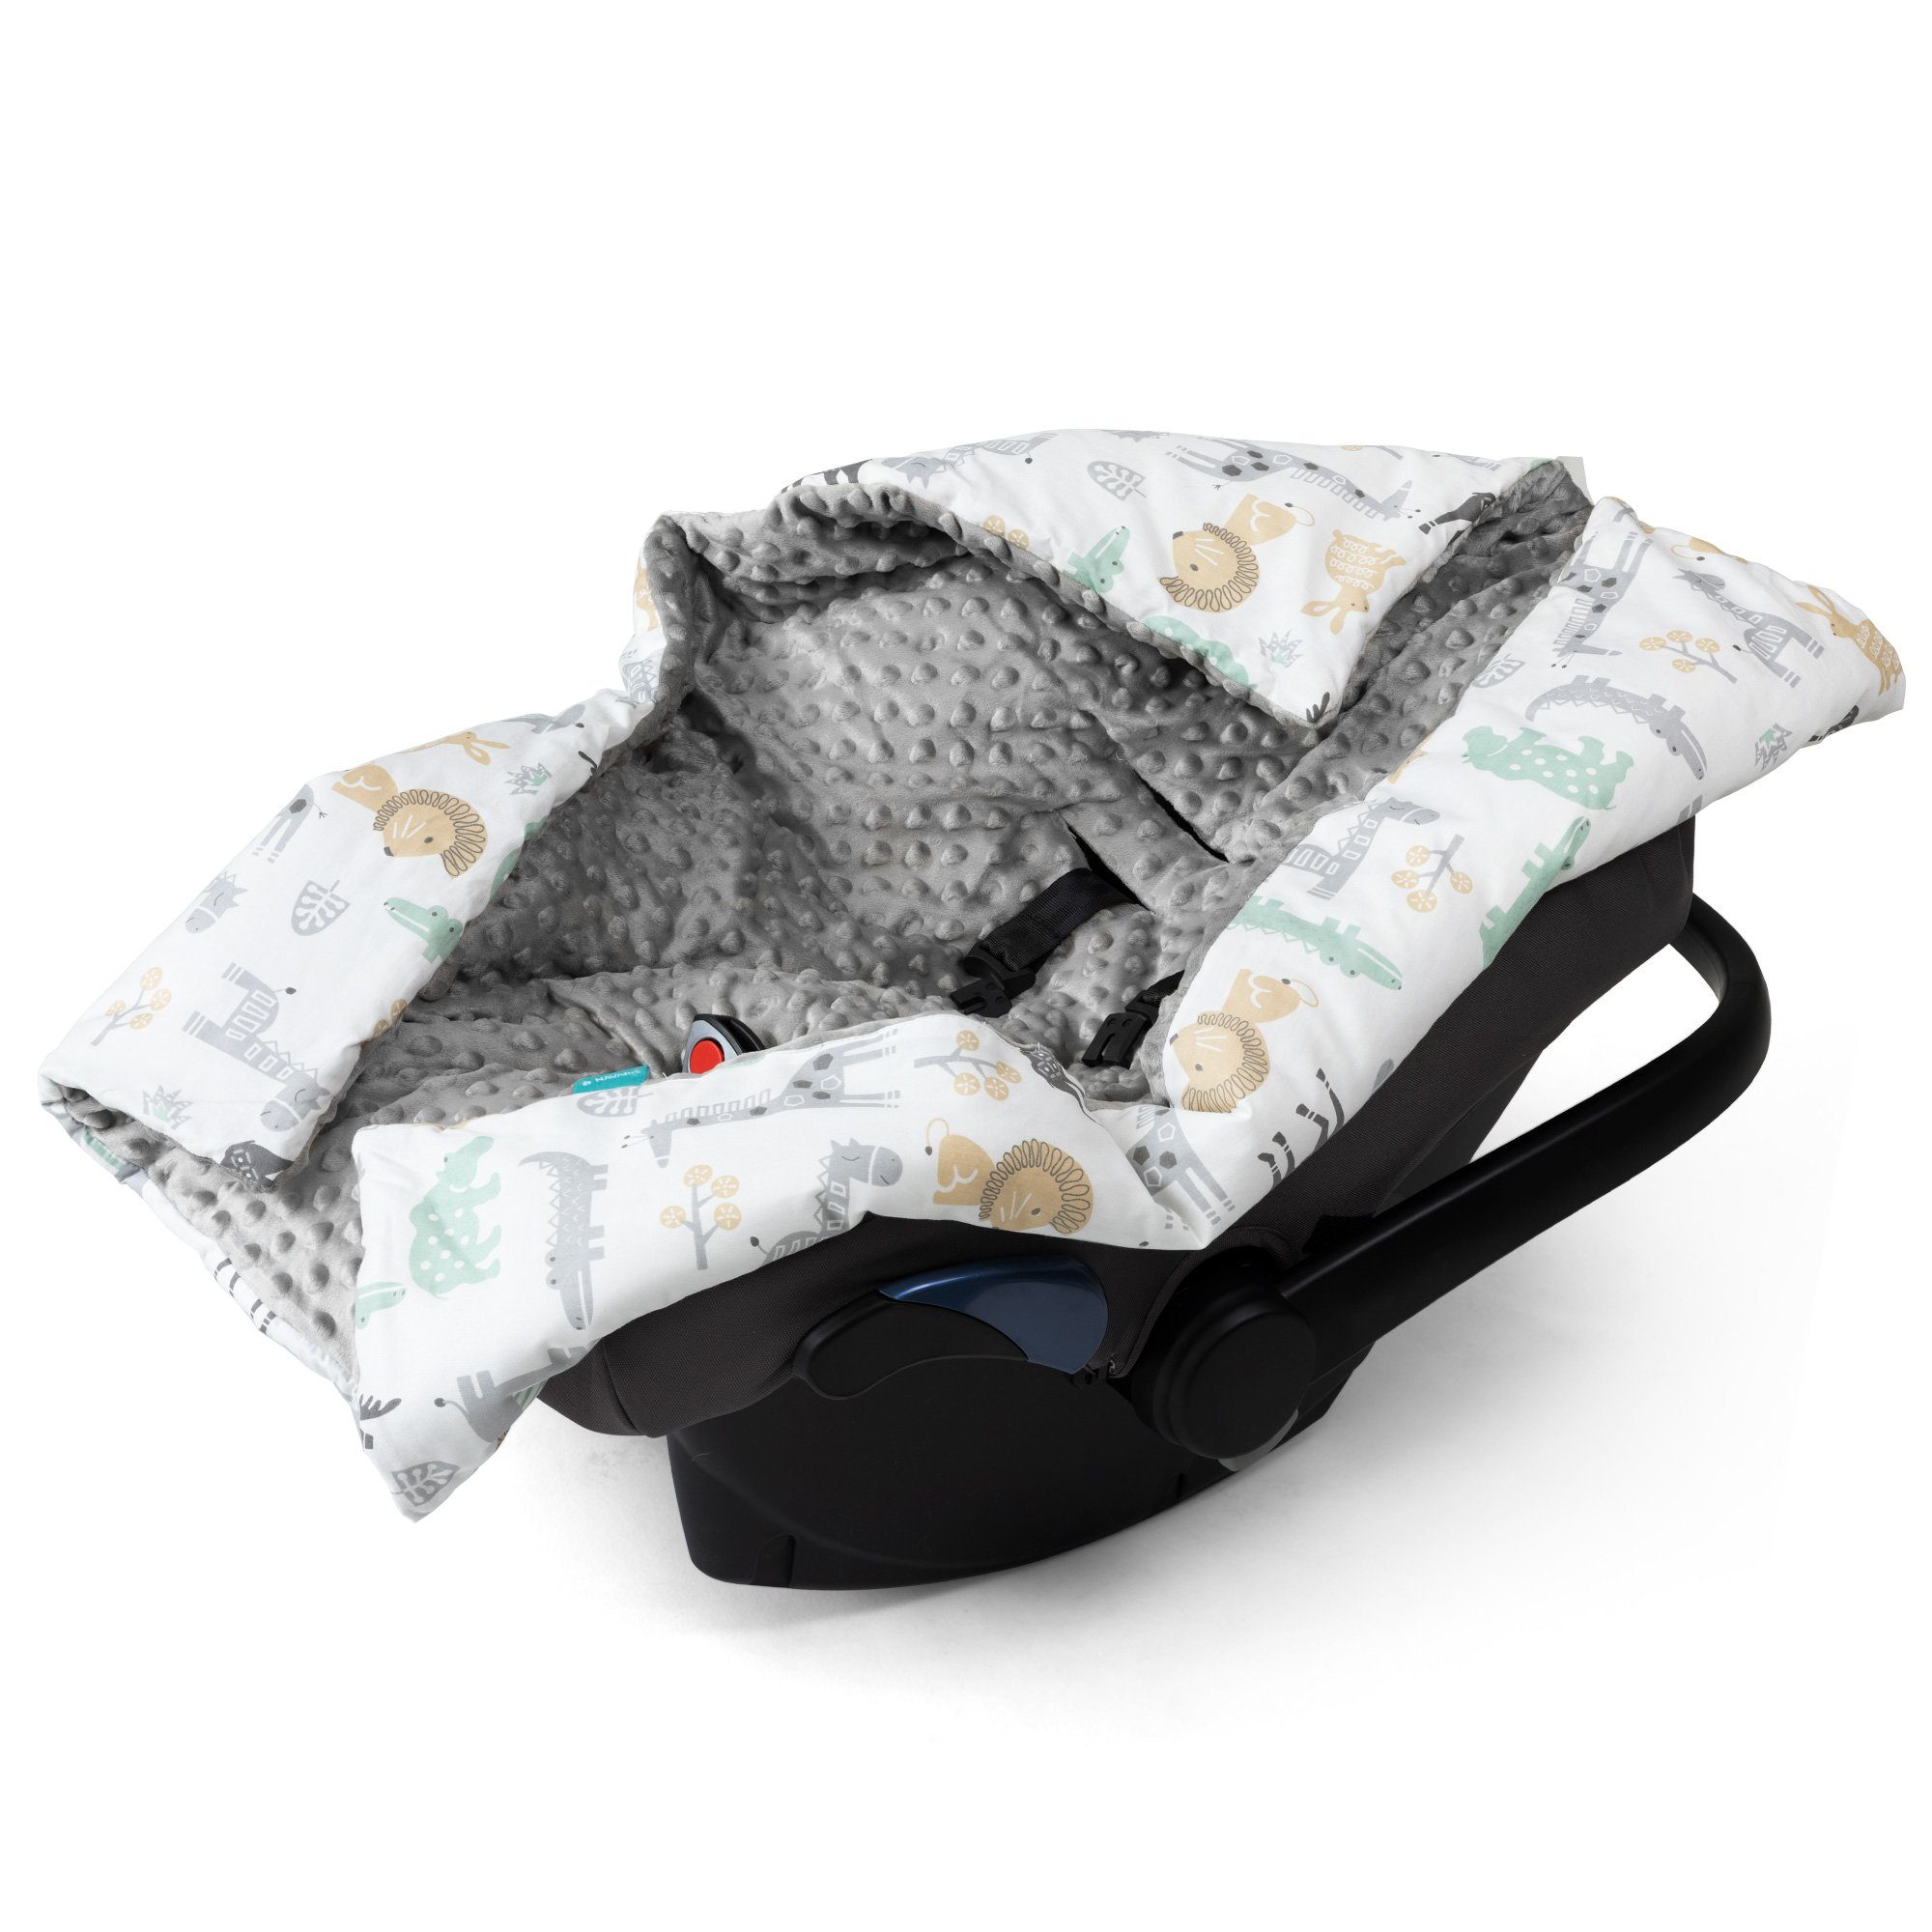 Tierwelt für Navaris Babyschale - Decke Fußsack Design, universal Einschlagdecke - -